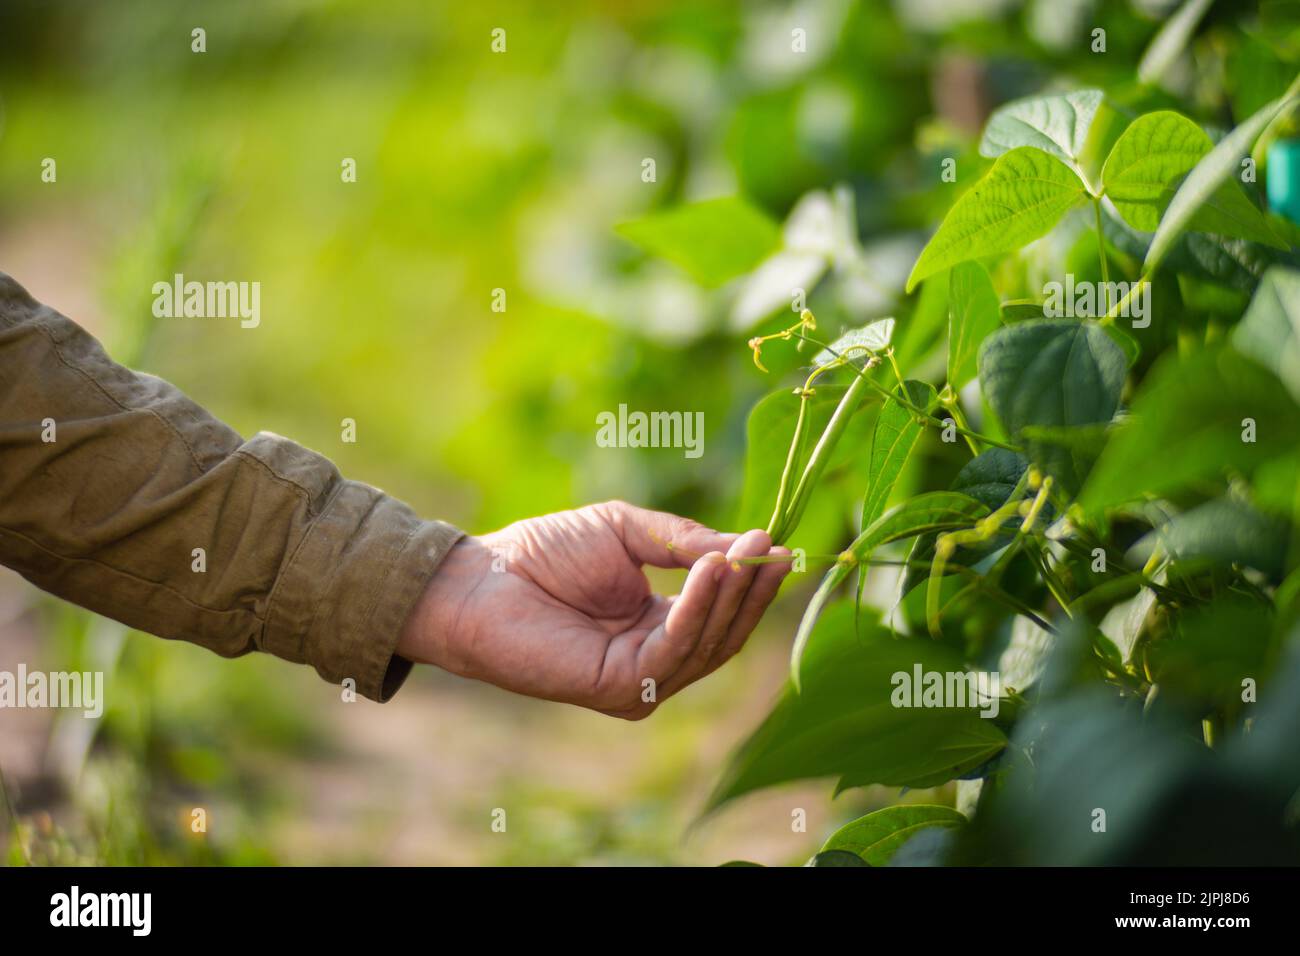 La mano dell'agricoltore tocca i raccolti agricoli da vicino. Vegetali crescenti nel giardino. Cura e manutenzione del raccolto. Prodotti ecologici Foto Stock